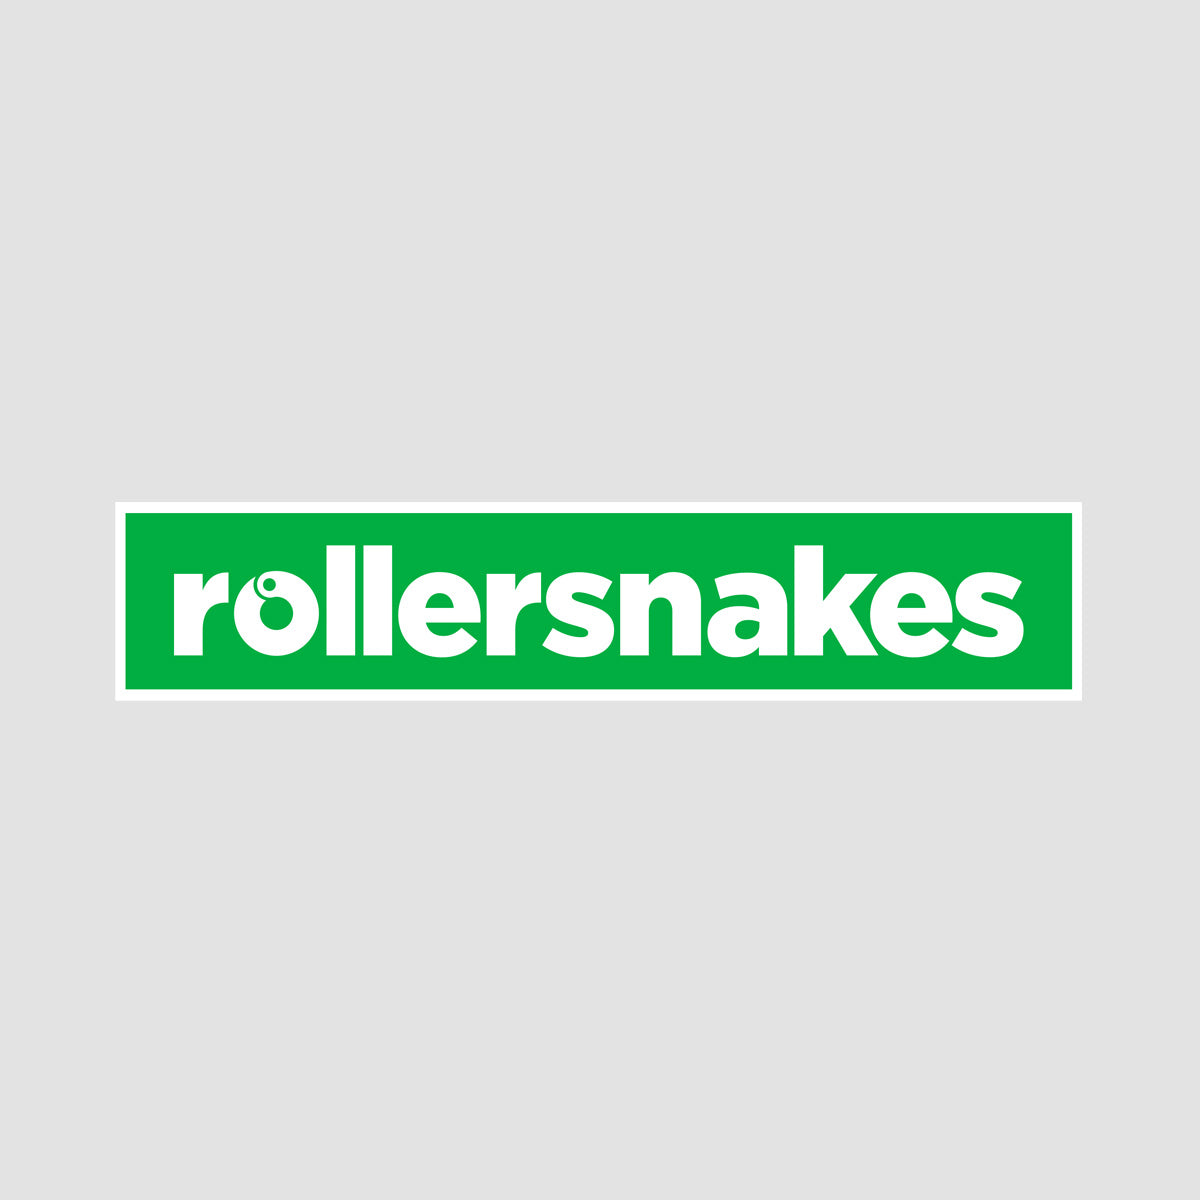 Rollersnakes WordMark Sticker Kelly Green 200x41mm